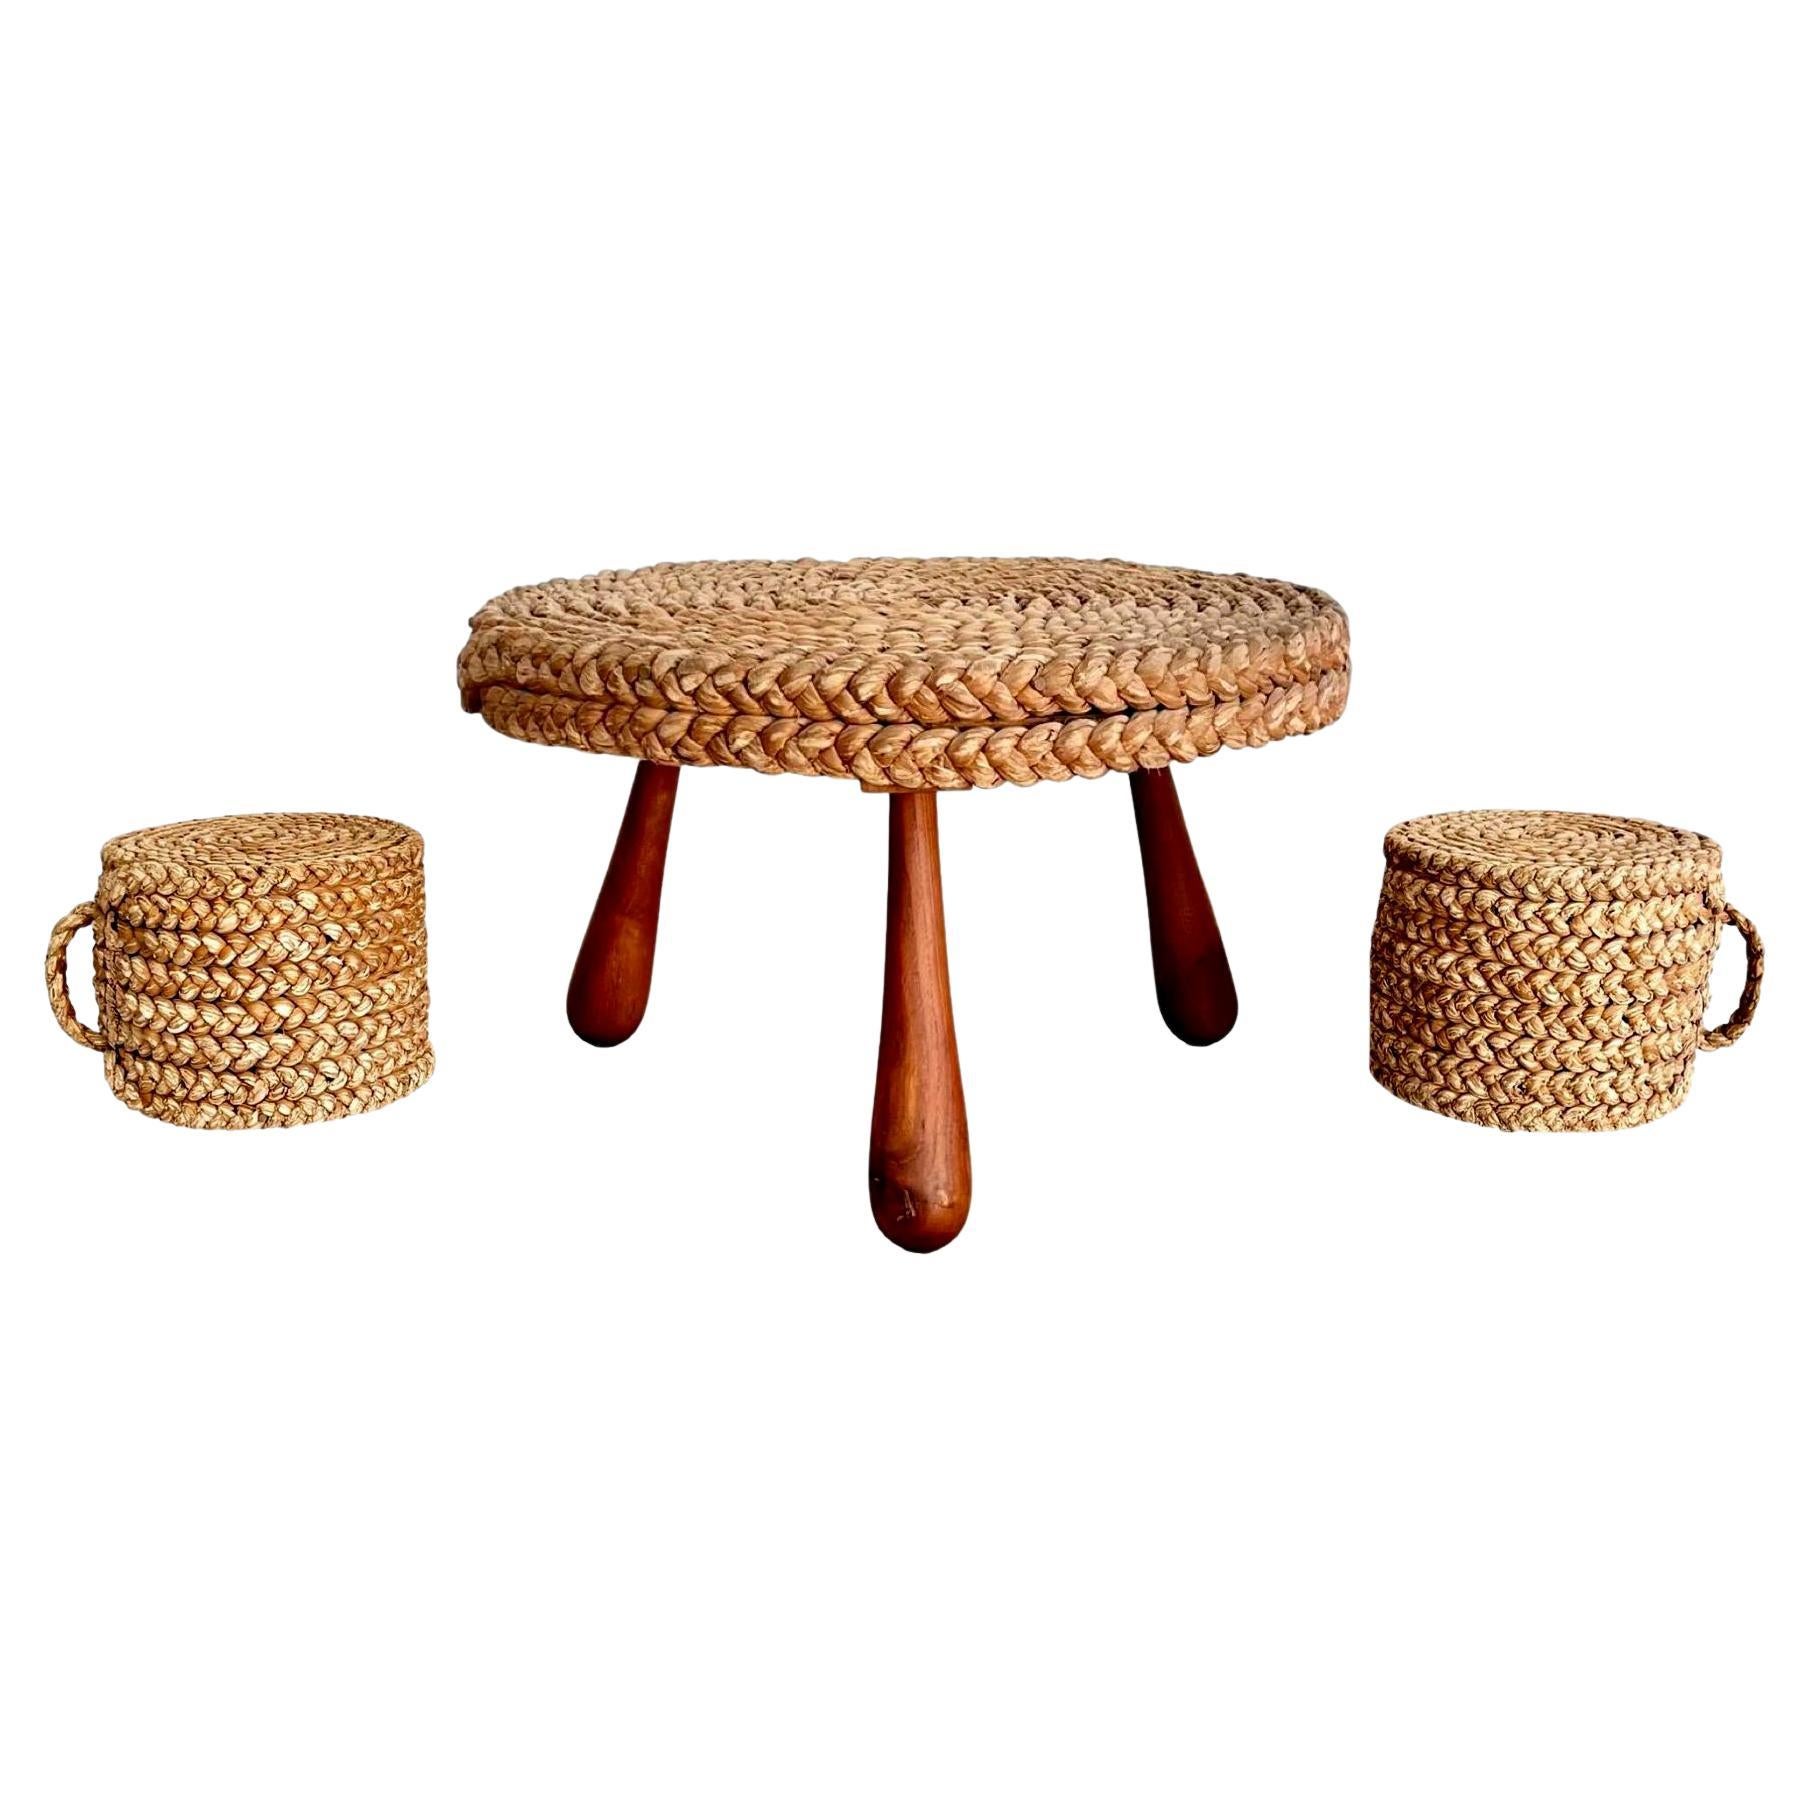 Tisch aus Seil und Holz mit zwei verschachtelten Hockern, 1960er Jahre, Frankreich